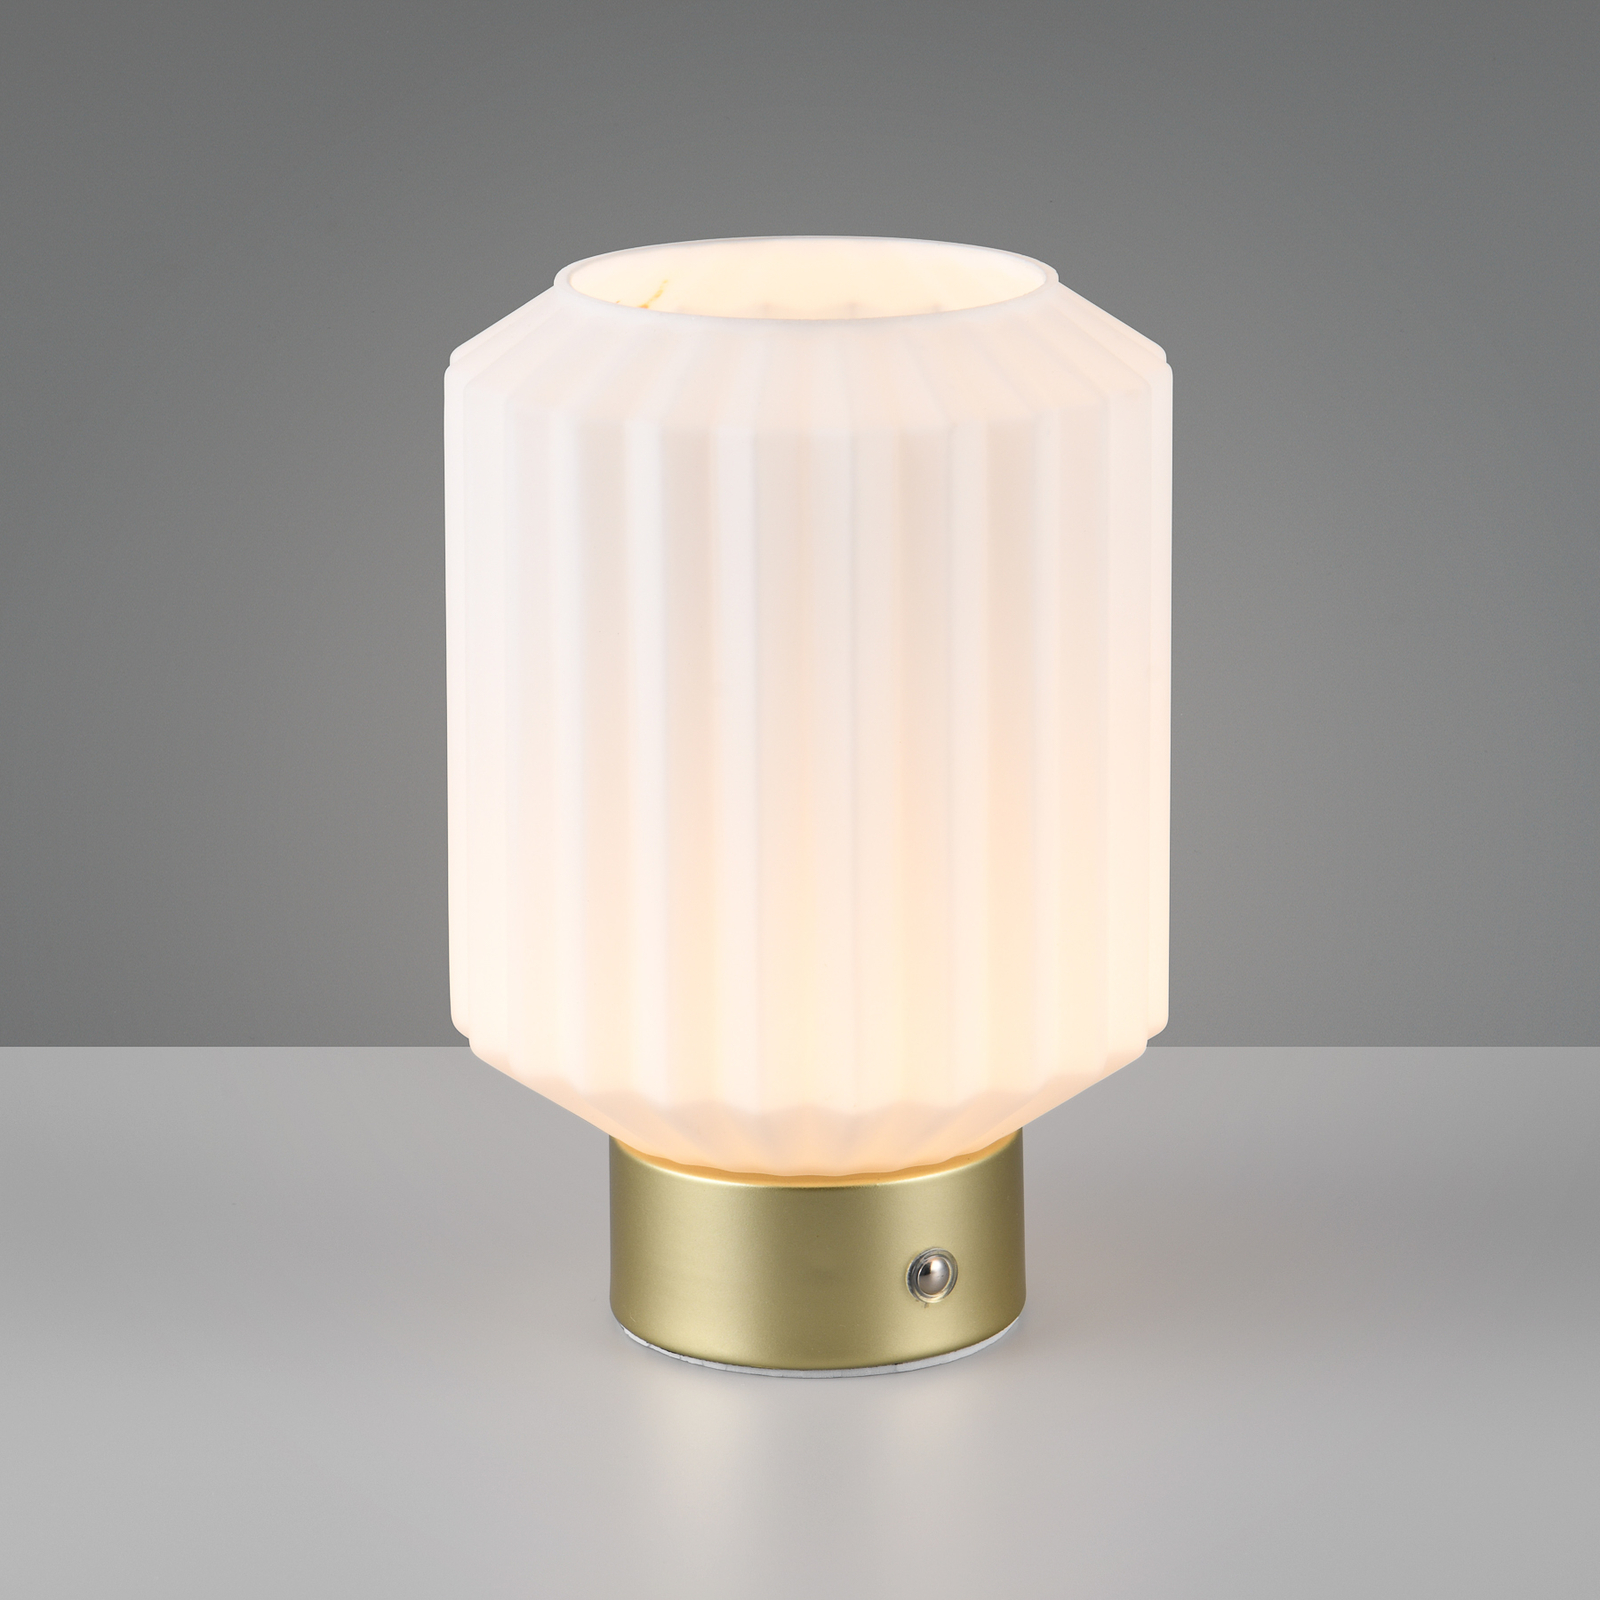 Настолна лампа Lord LED с възможност за презареждане, месинг/опал,